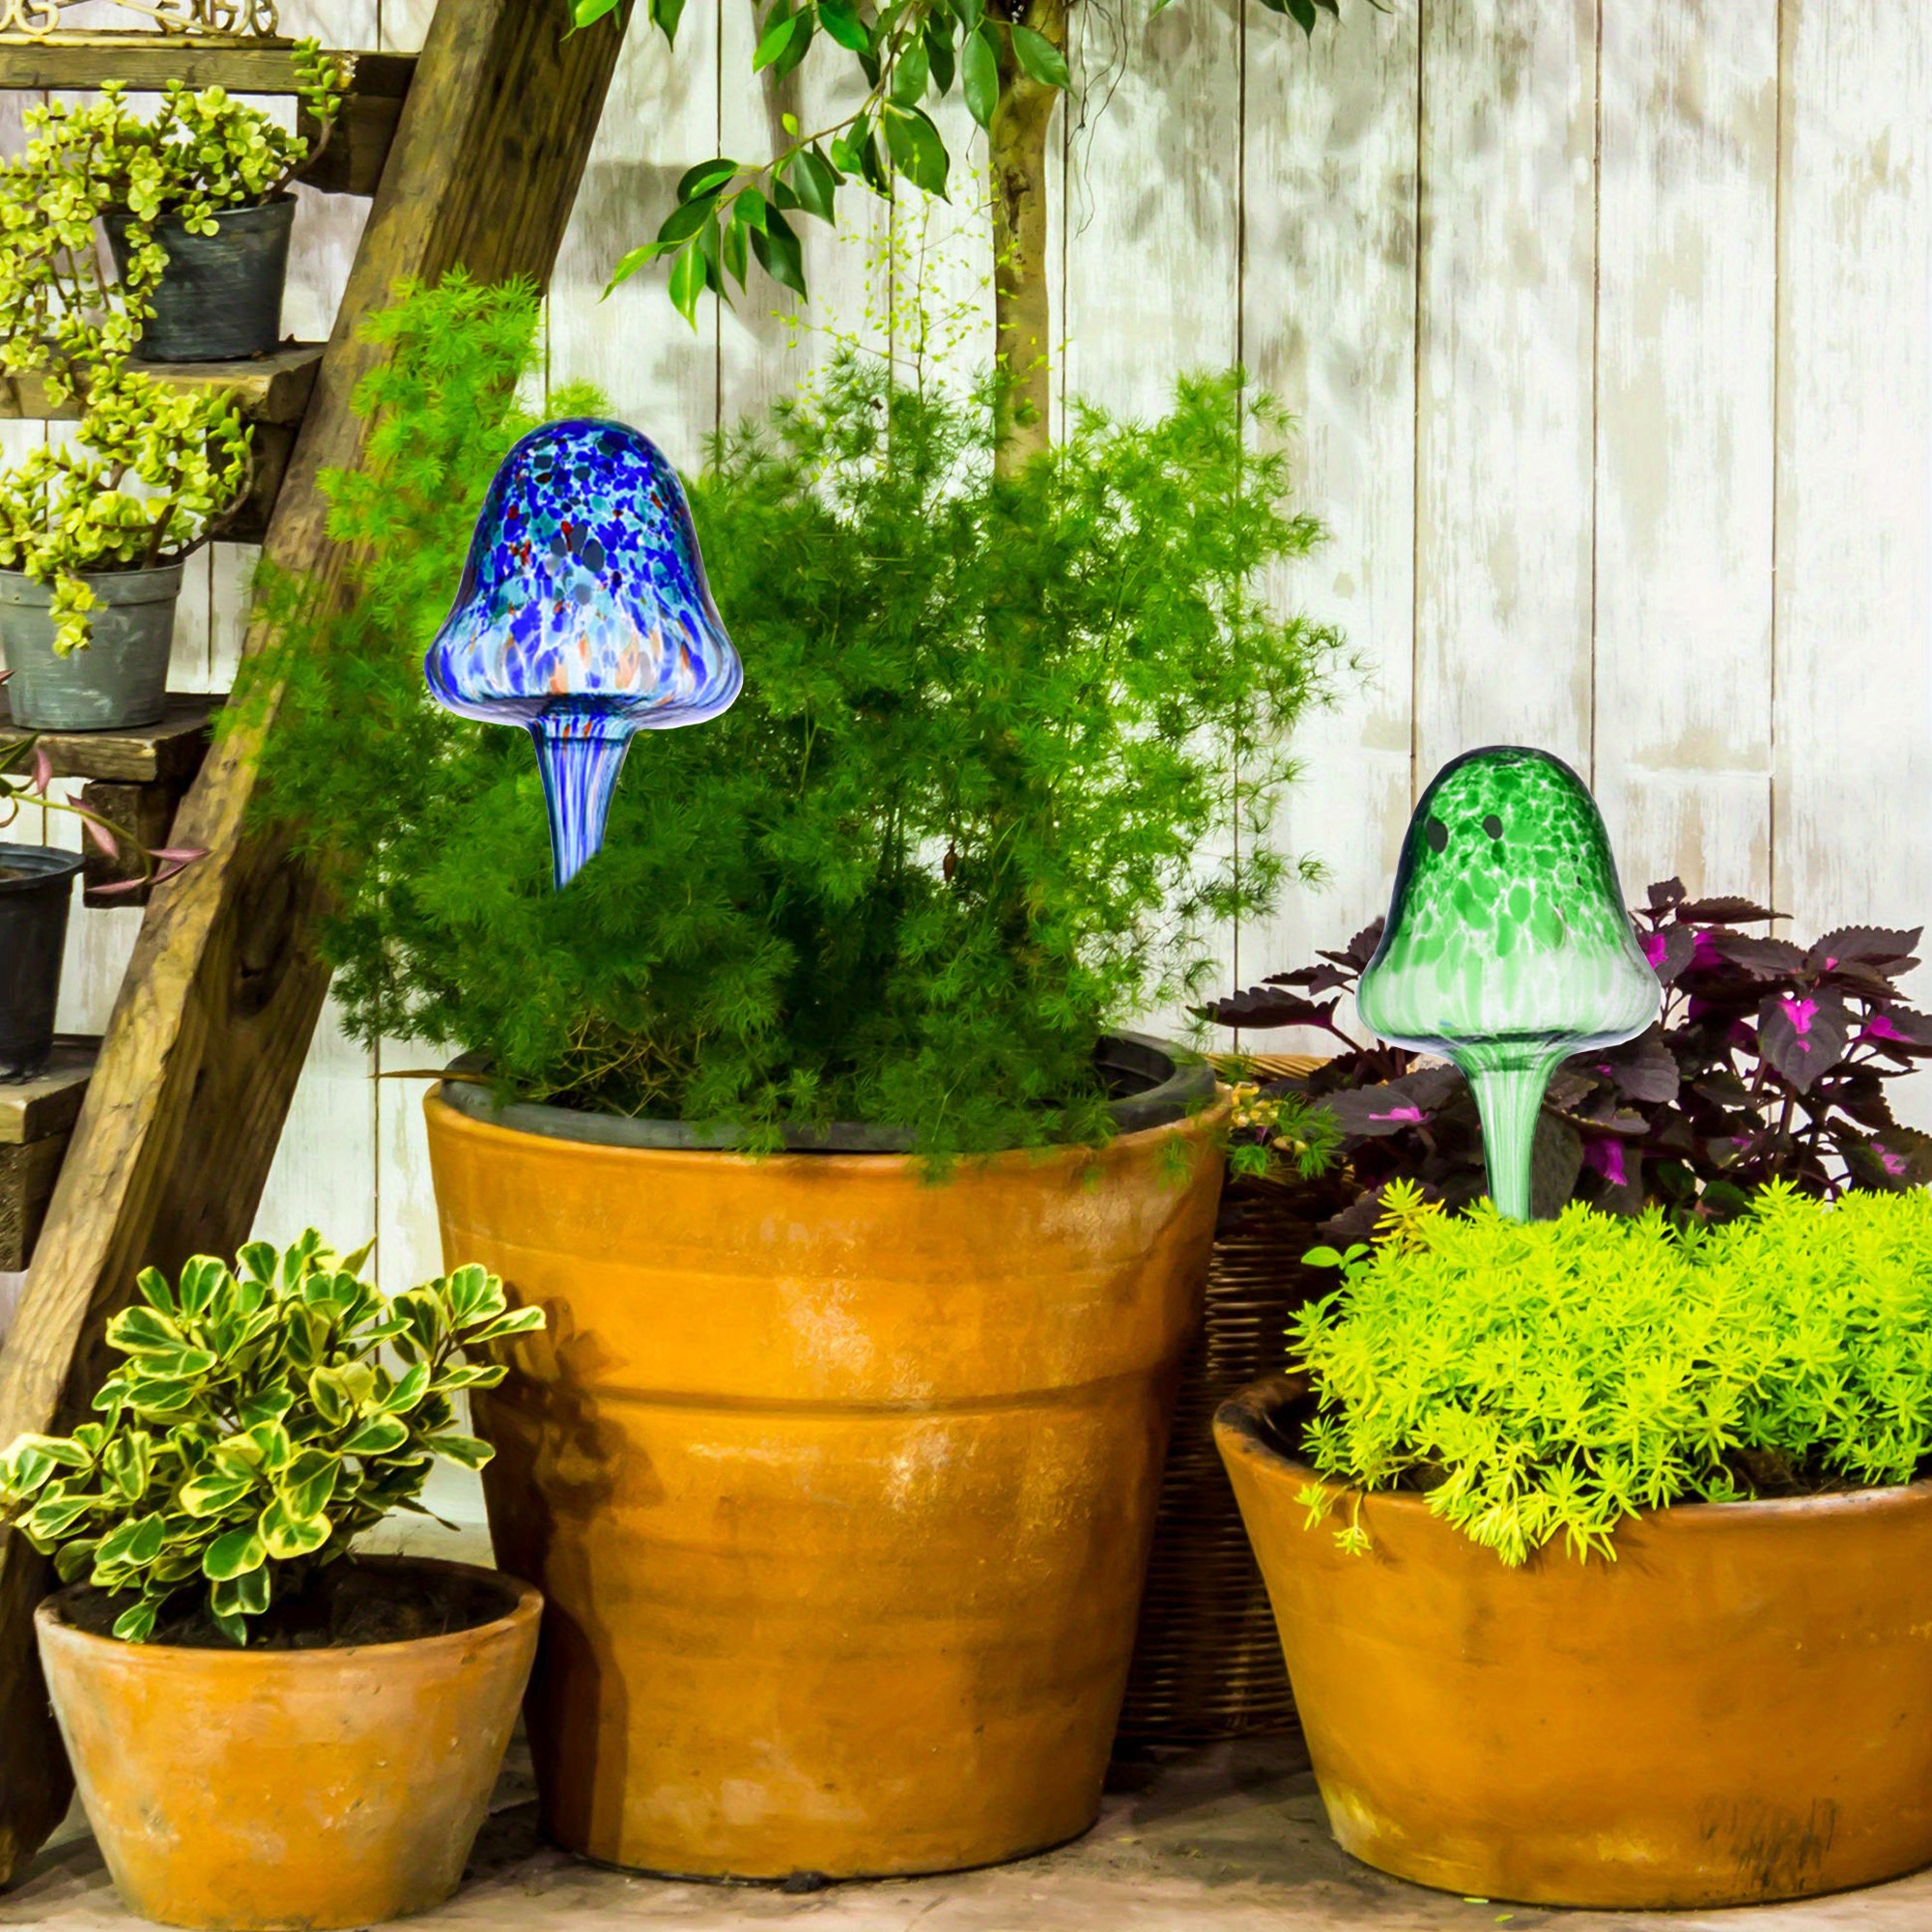 Acheter Ampoules d'arrosage pour plantes, Globes à arrosage